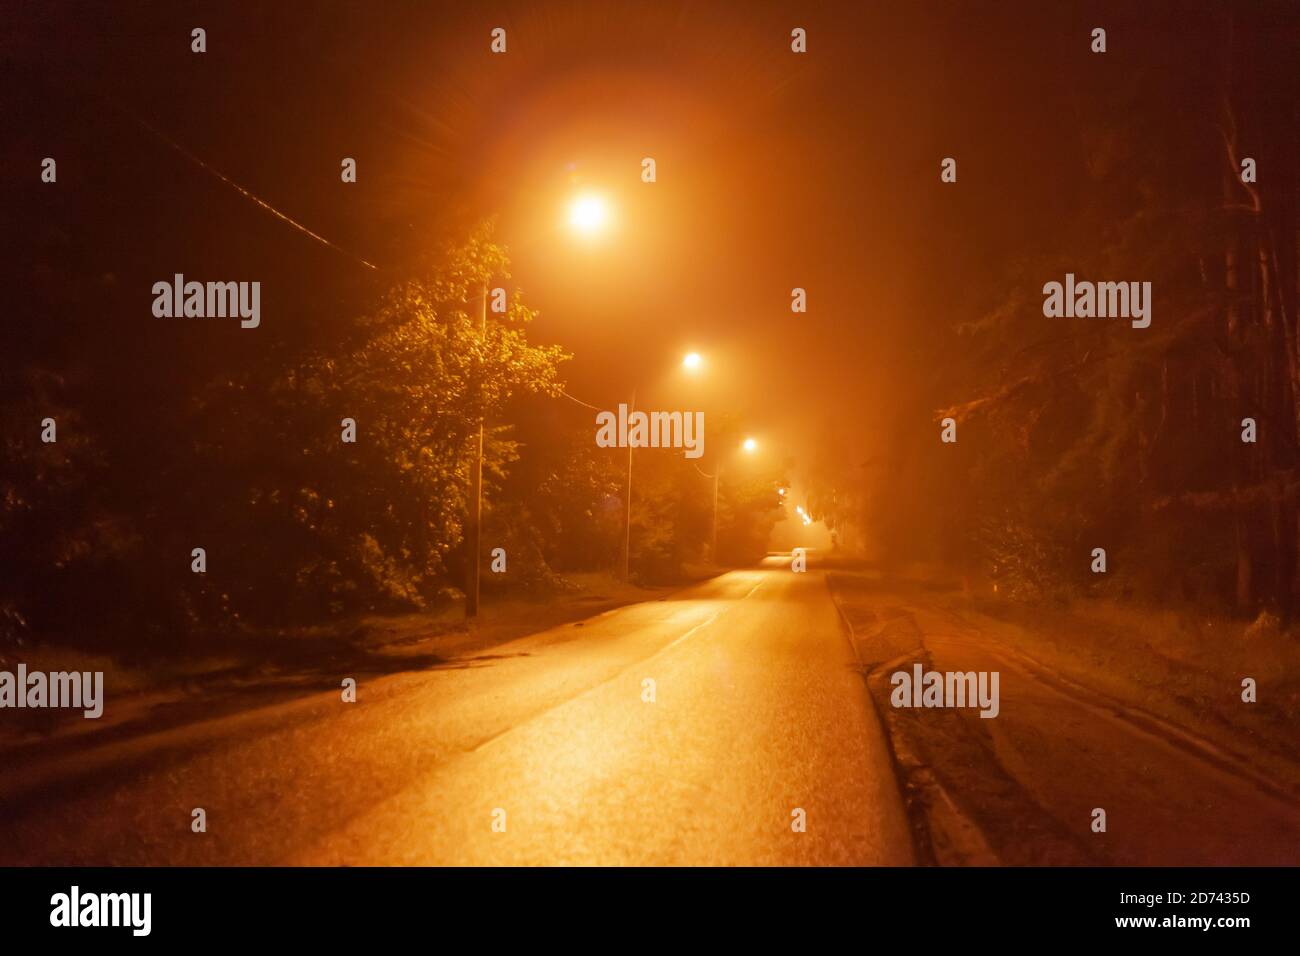 night desert road in the fog Stock Photo